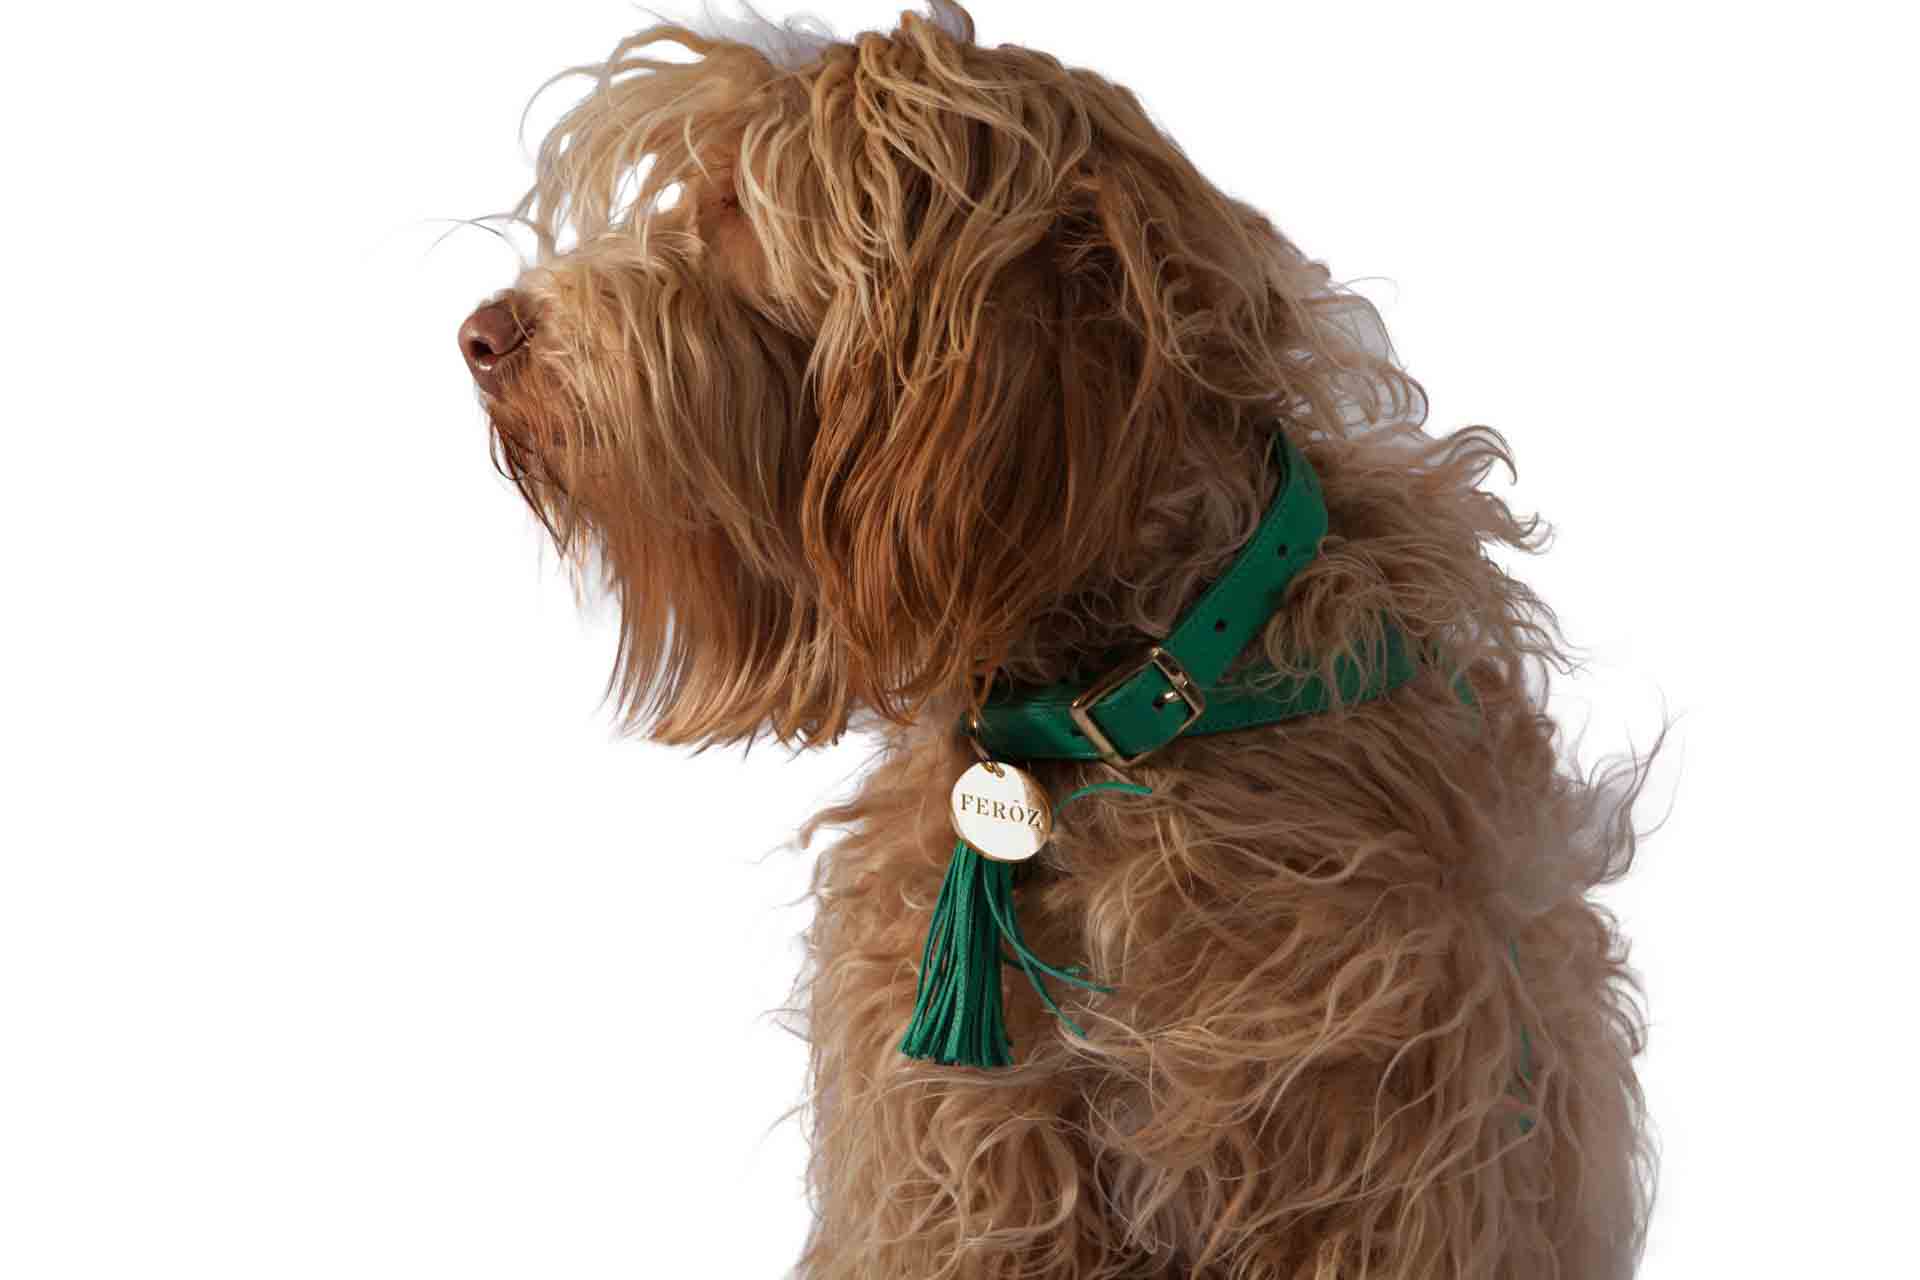 Turquoise leather dog leash